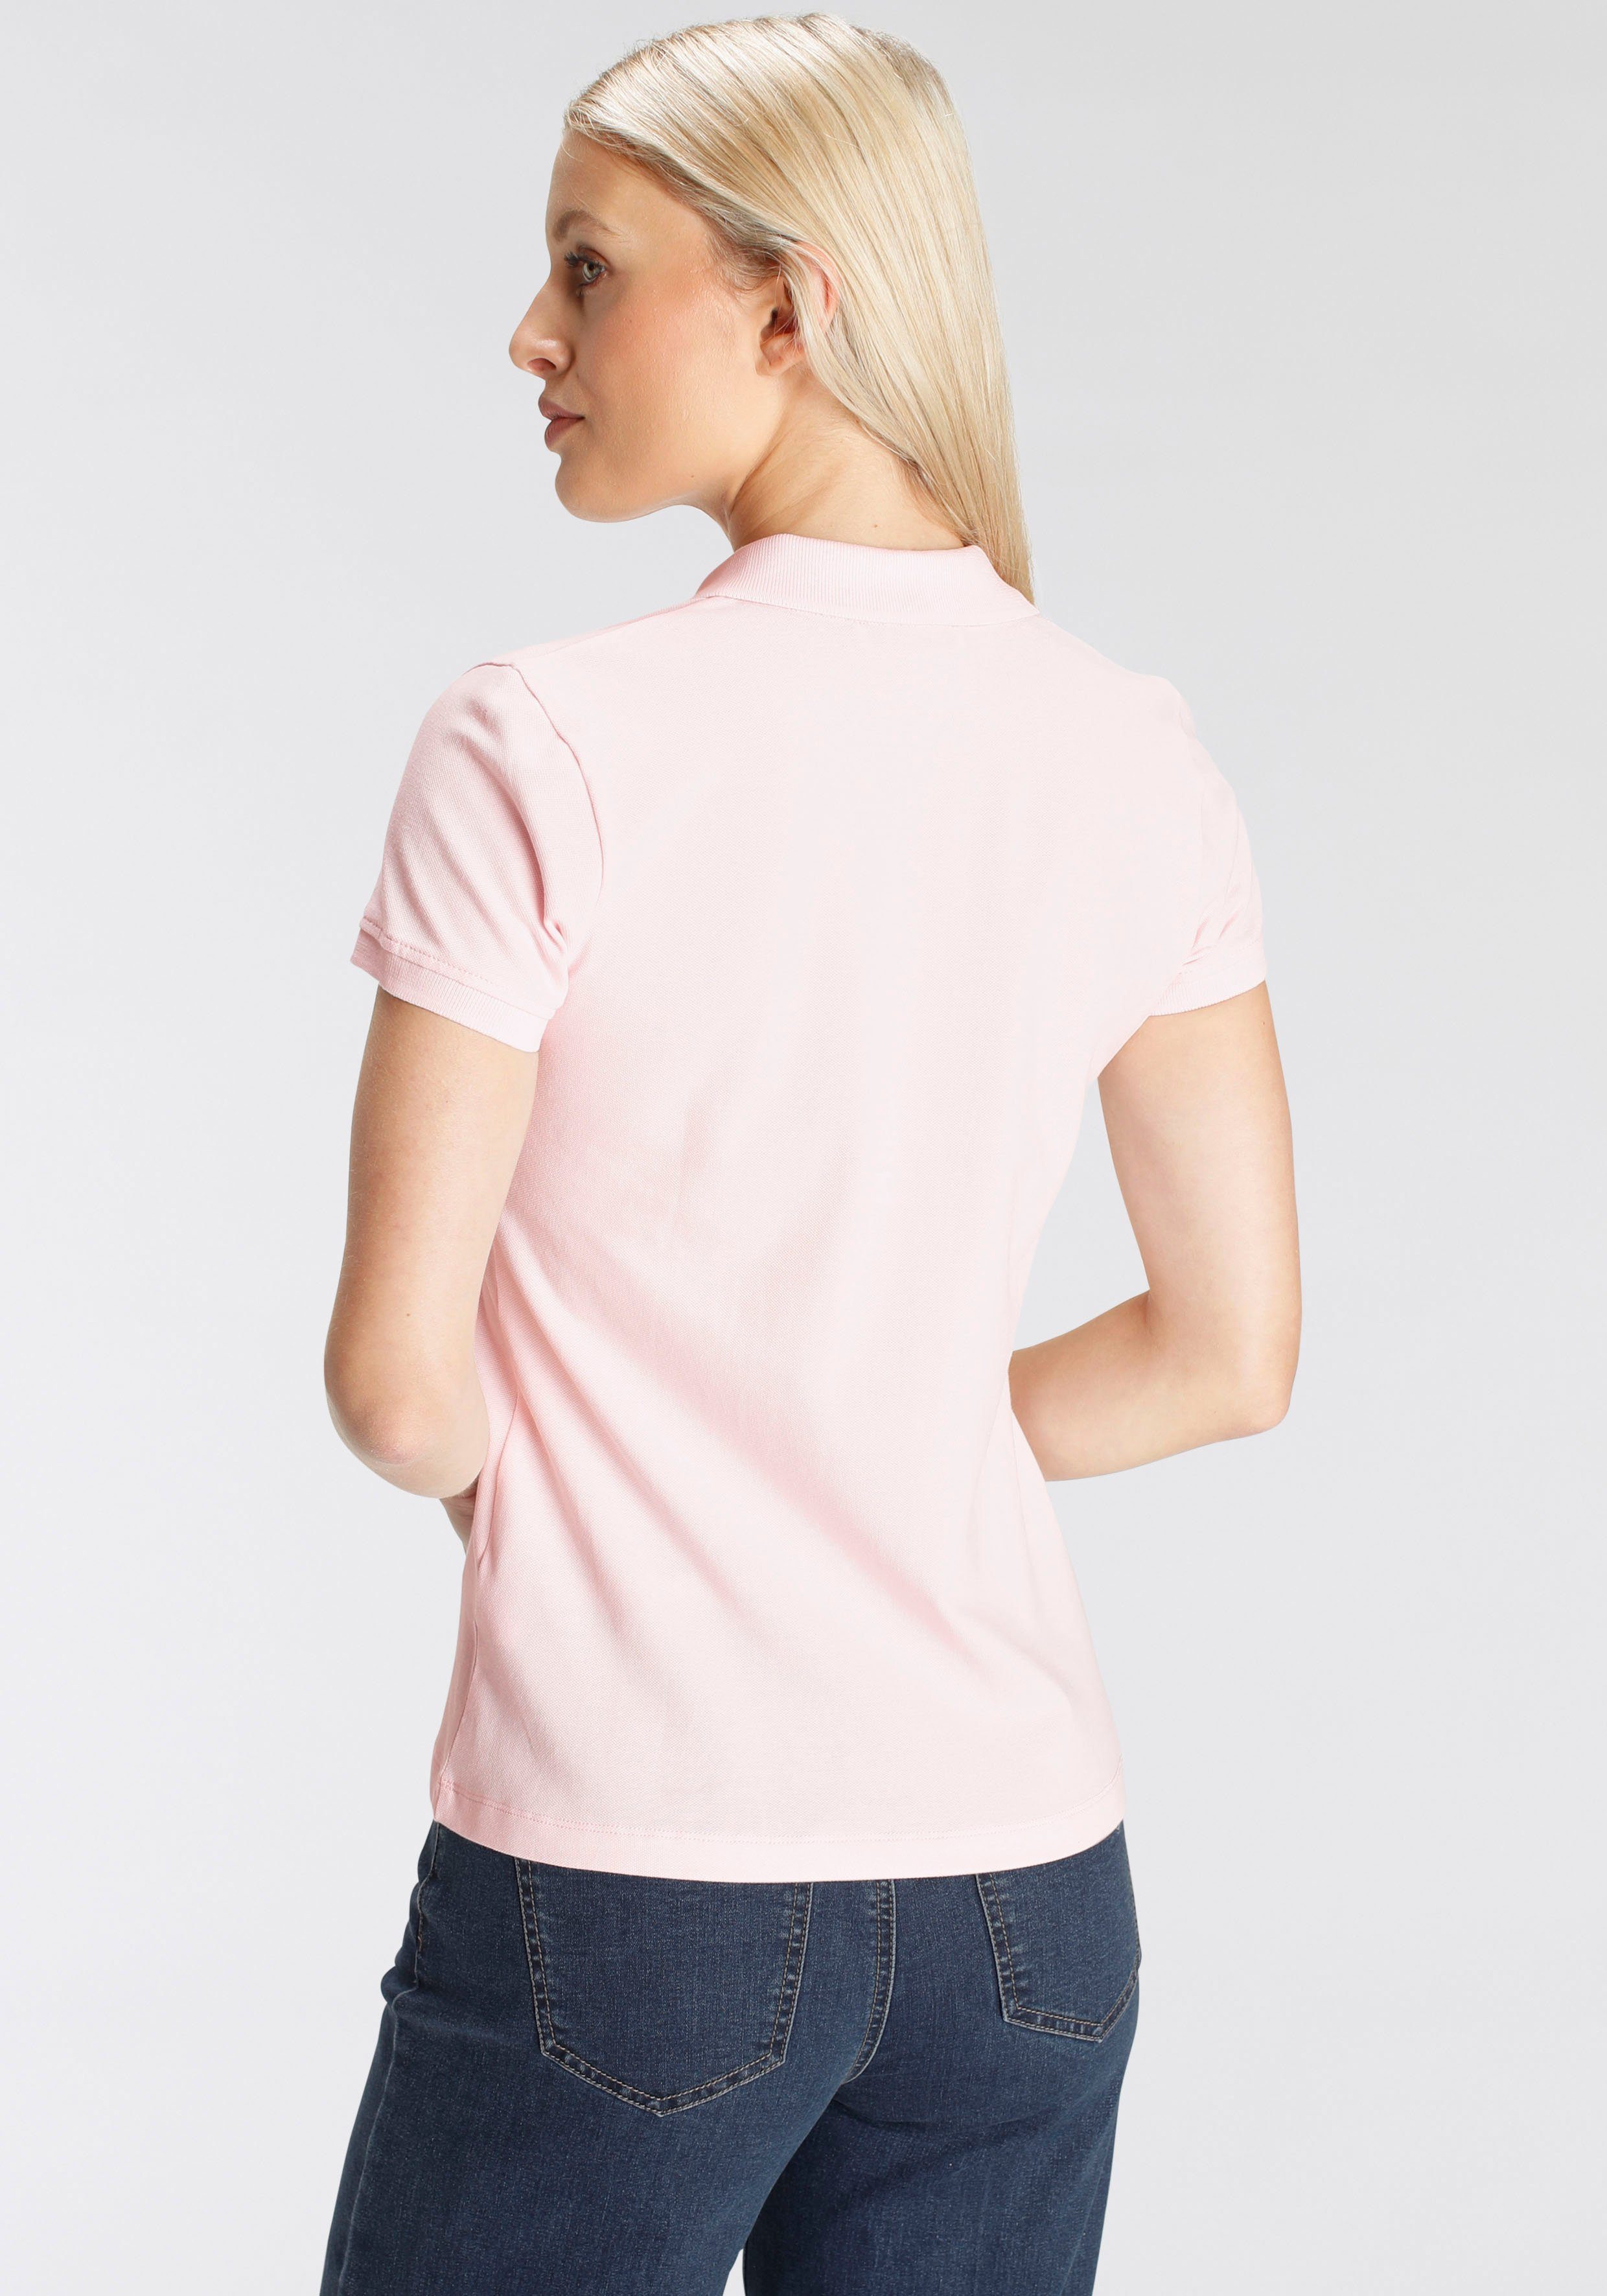 Farben verschiedenen klassischer Form - in MARKE! DELMAO NEUE Poloshirt rosa in